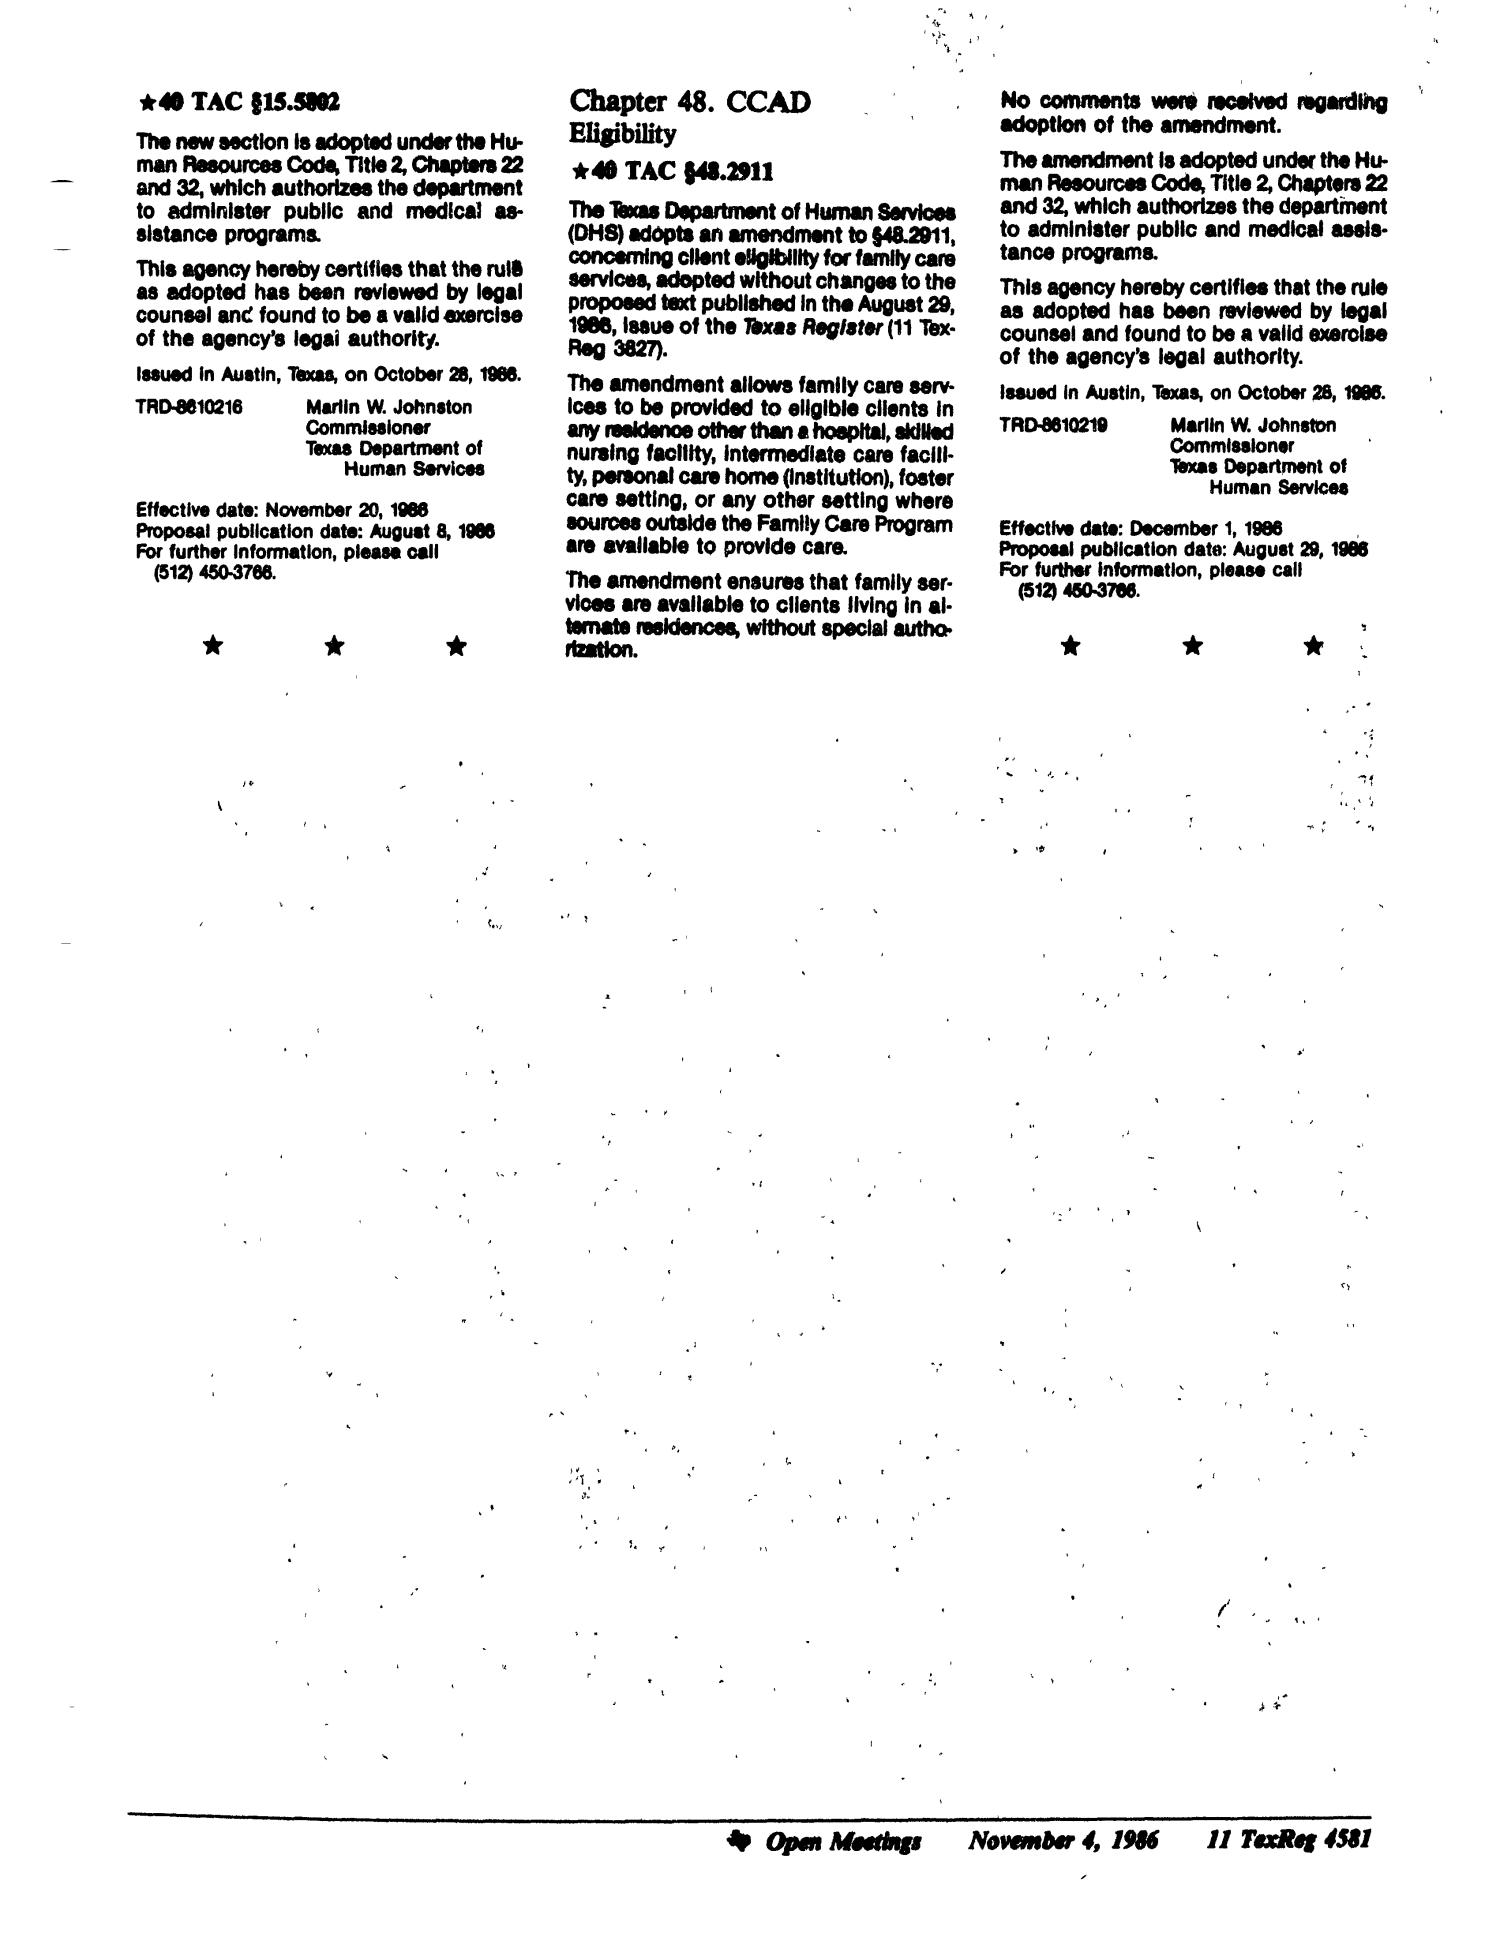 Texas Register, Volume 11, Number 83, Pages 4557-4604, November 4, 1986
                                                
                                                    4581
                                                